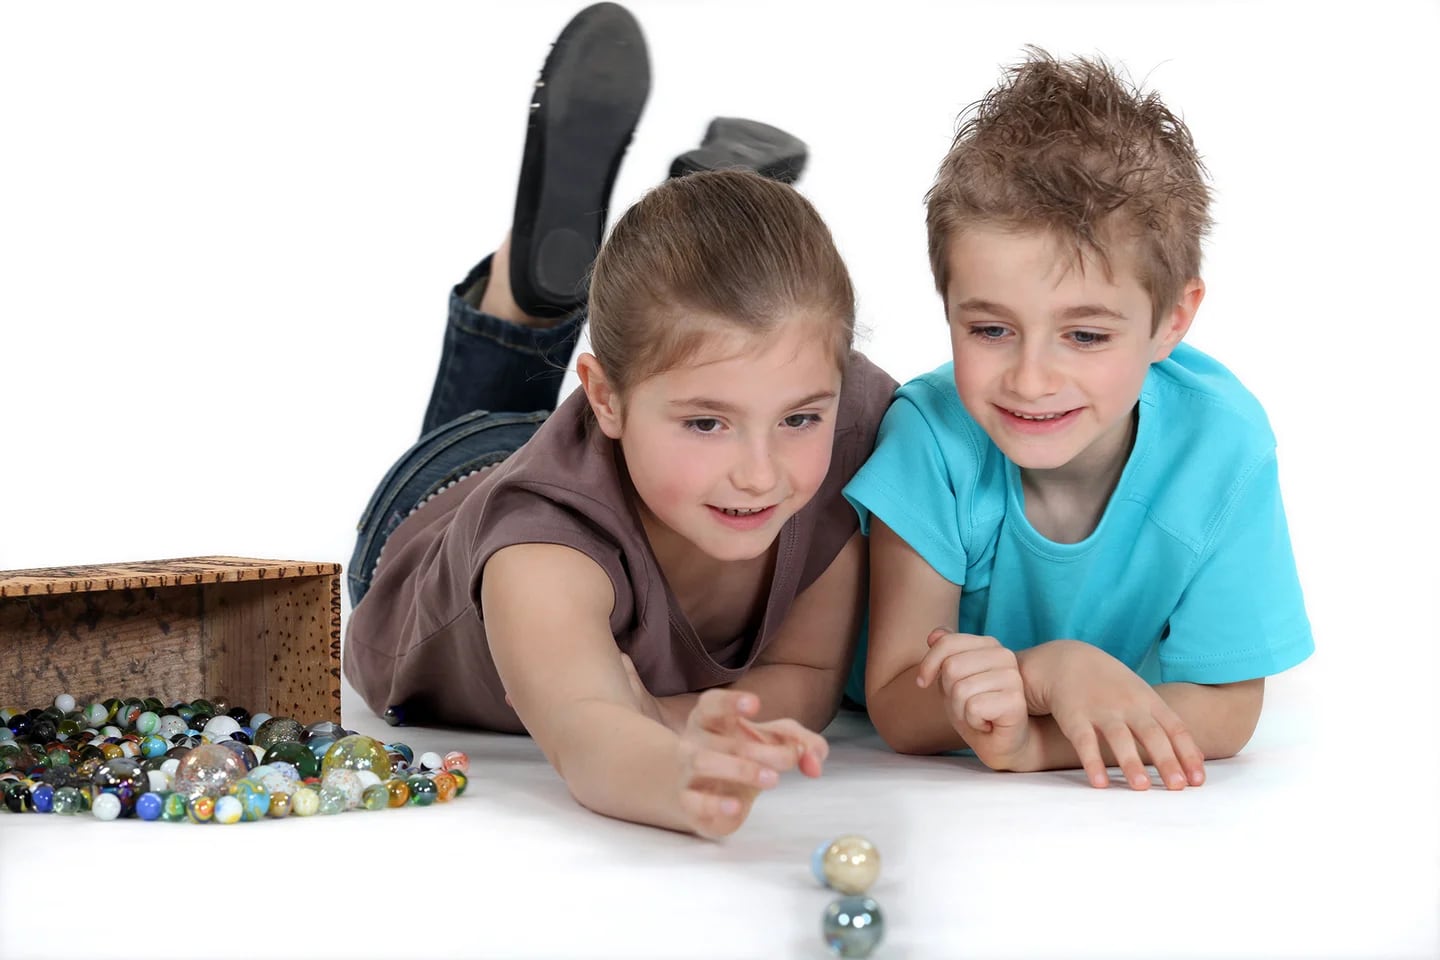 35 Juegos para niños de 3 a 5 años - ¡Al aire libre o en casa!